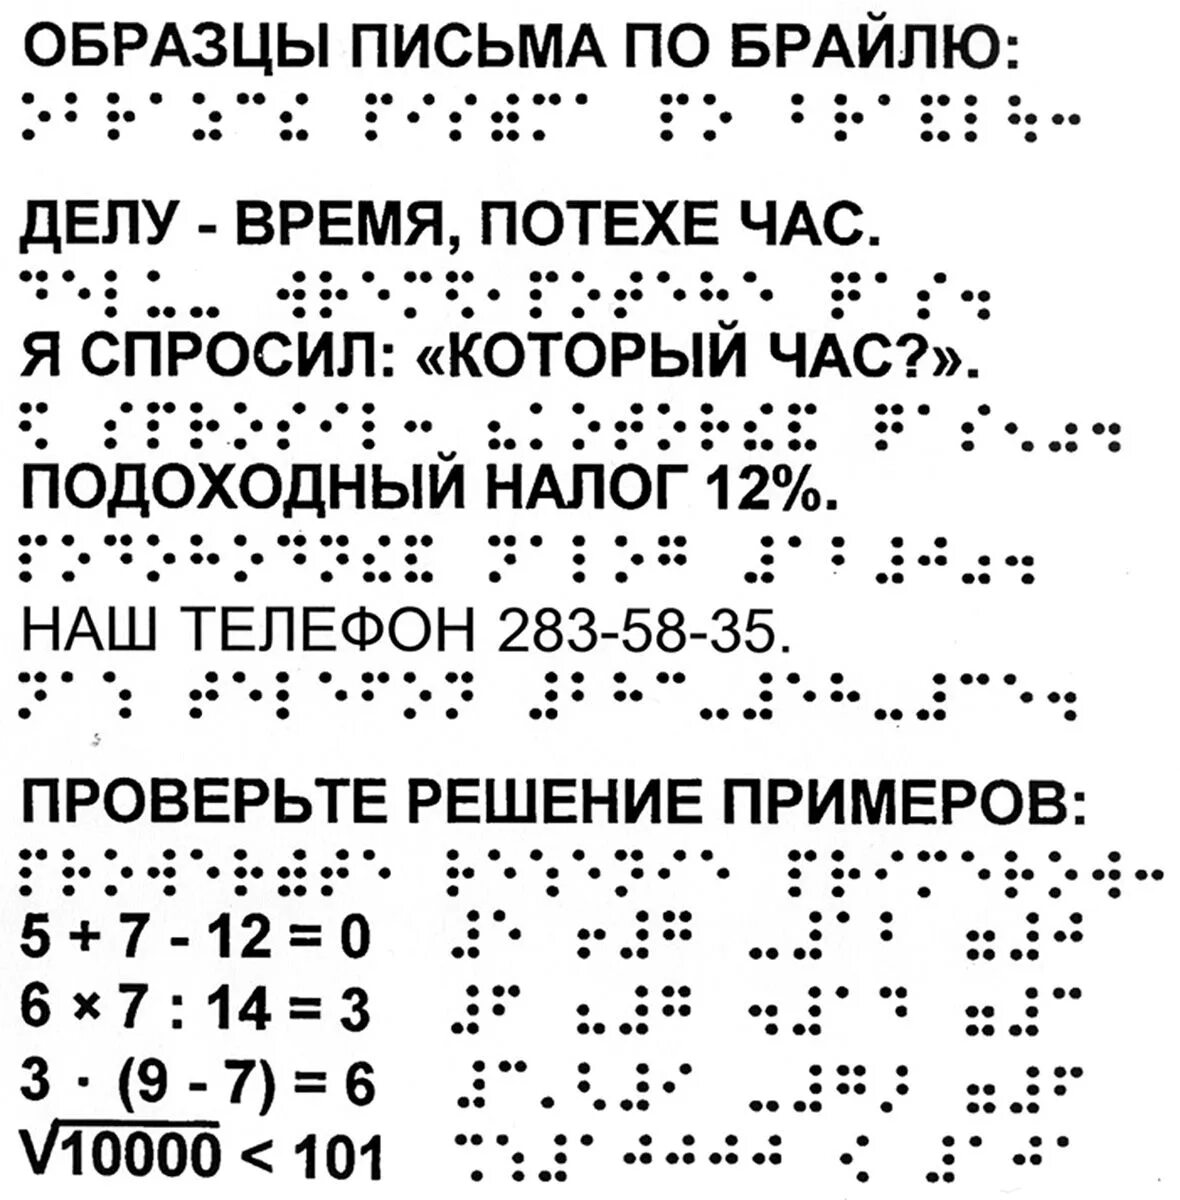 Шрифты для книги для чтения. Азбука по системе Брайля. Рельефно-точечный шрифт Брайля. Алфавит Брайля на русском для слепых. Азбука для слепых шрифт Брайля.